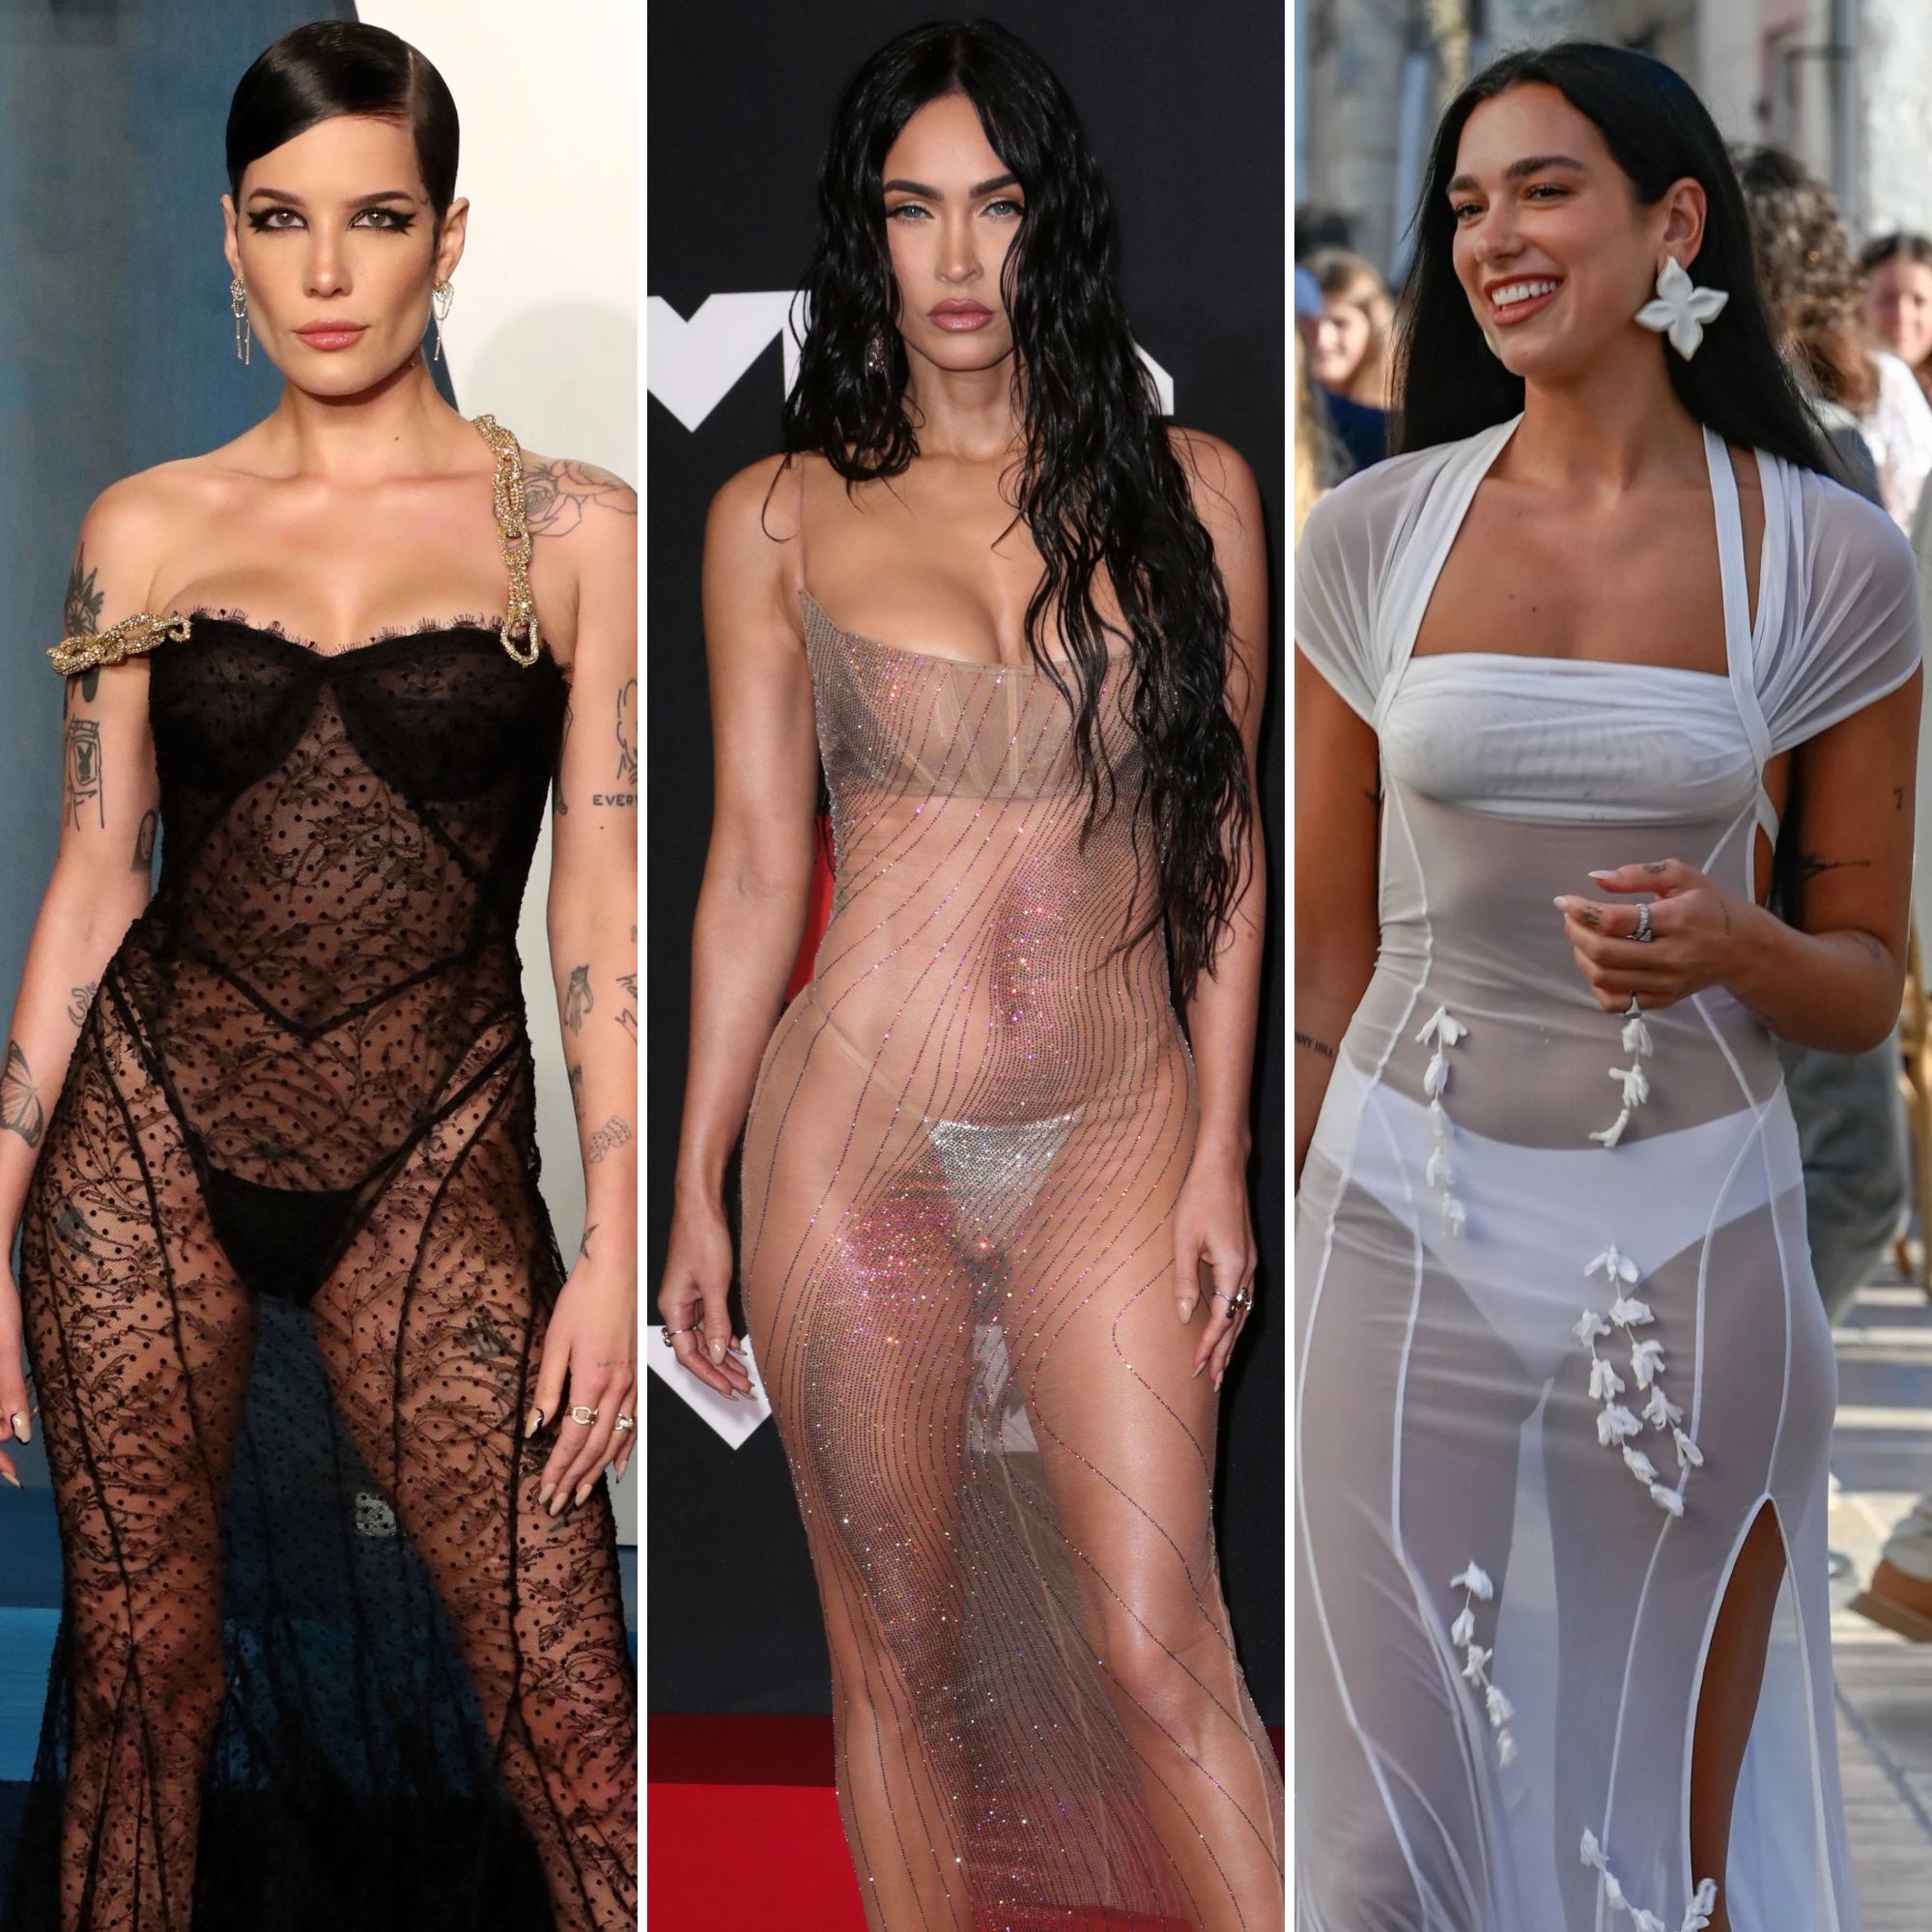 Celebrities Flashing Underwear: Sexiest Photos